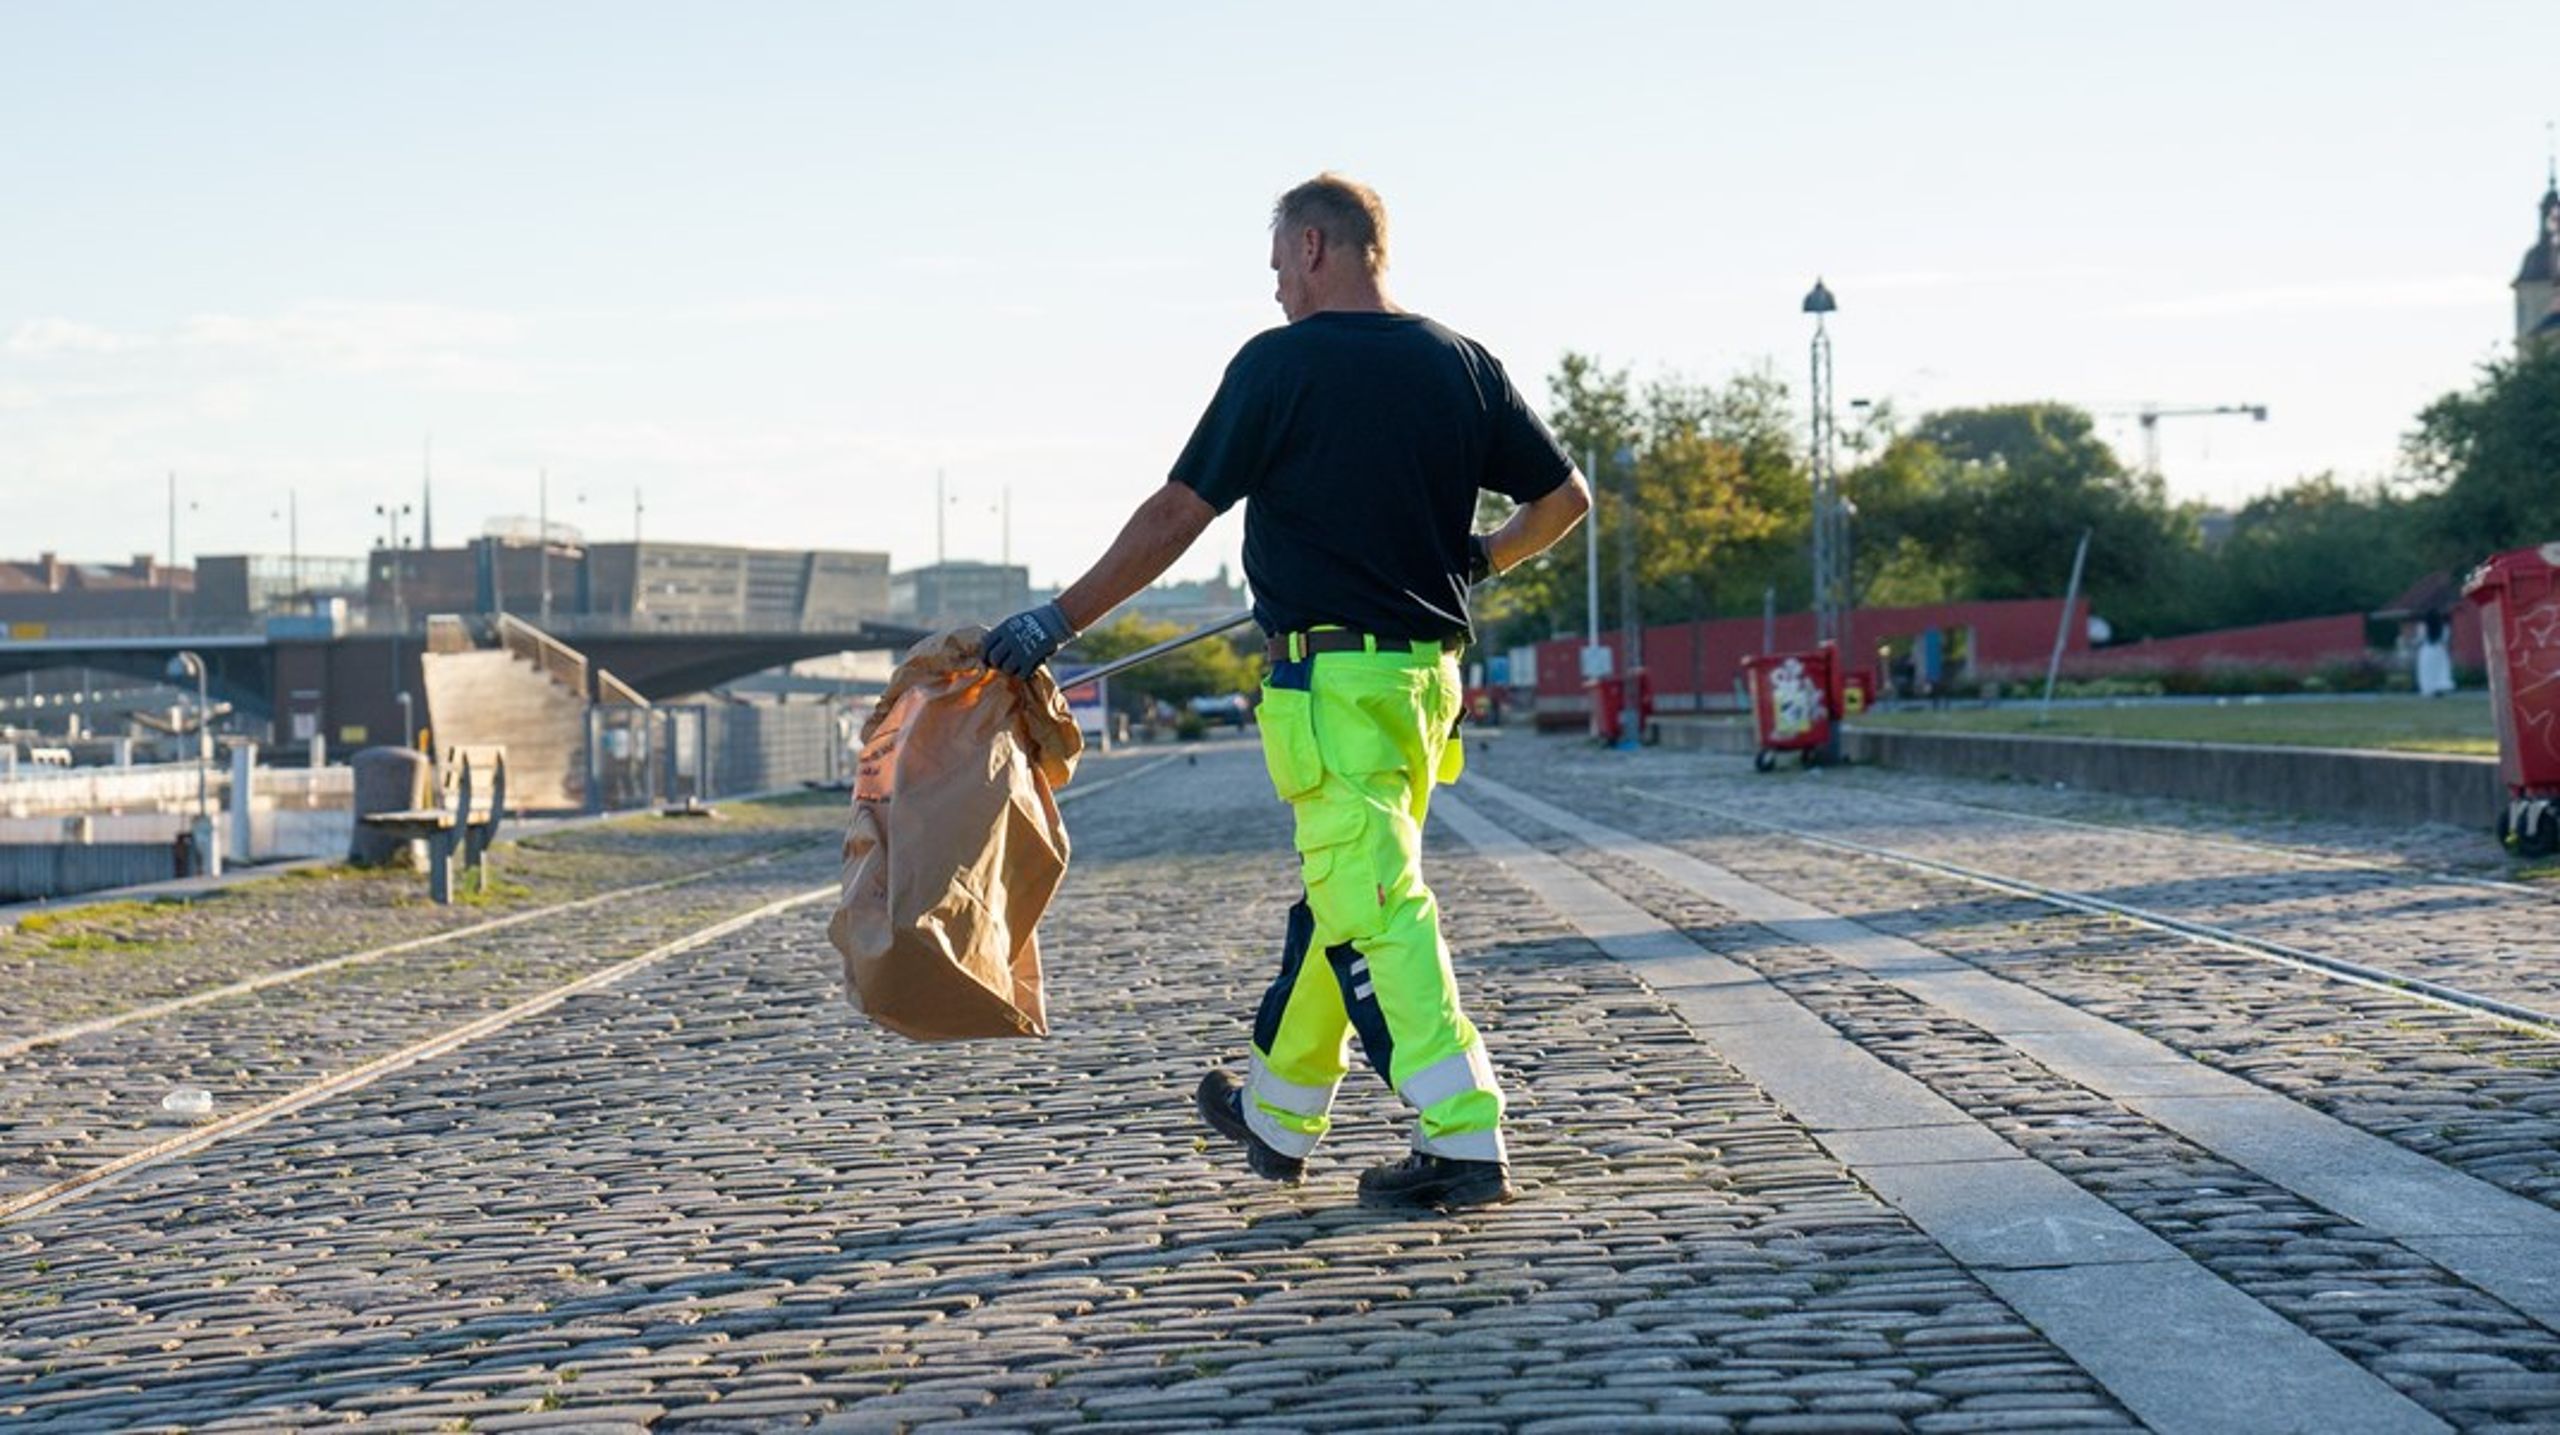 I København har vi hjemtaget affaldsindsamlingen efter en undersøgelse, der dokumenterede alvorlige sundhedsrisici for skraldemænd og dårligere prognose for tilbagevenden til arbejdsmarkedet, skriver&nbsp;Line Barfod og Klaus
Goldschmidt Henriksen.<br>